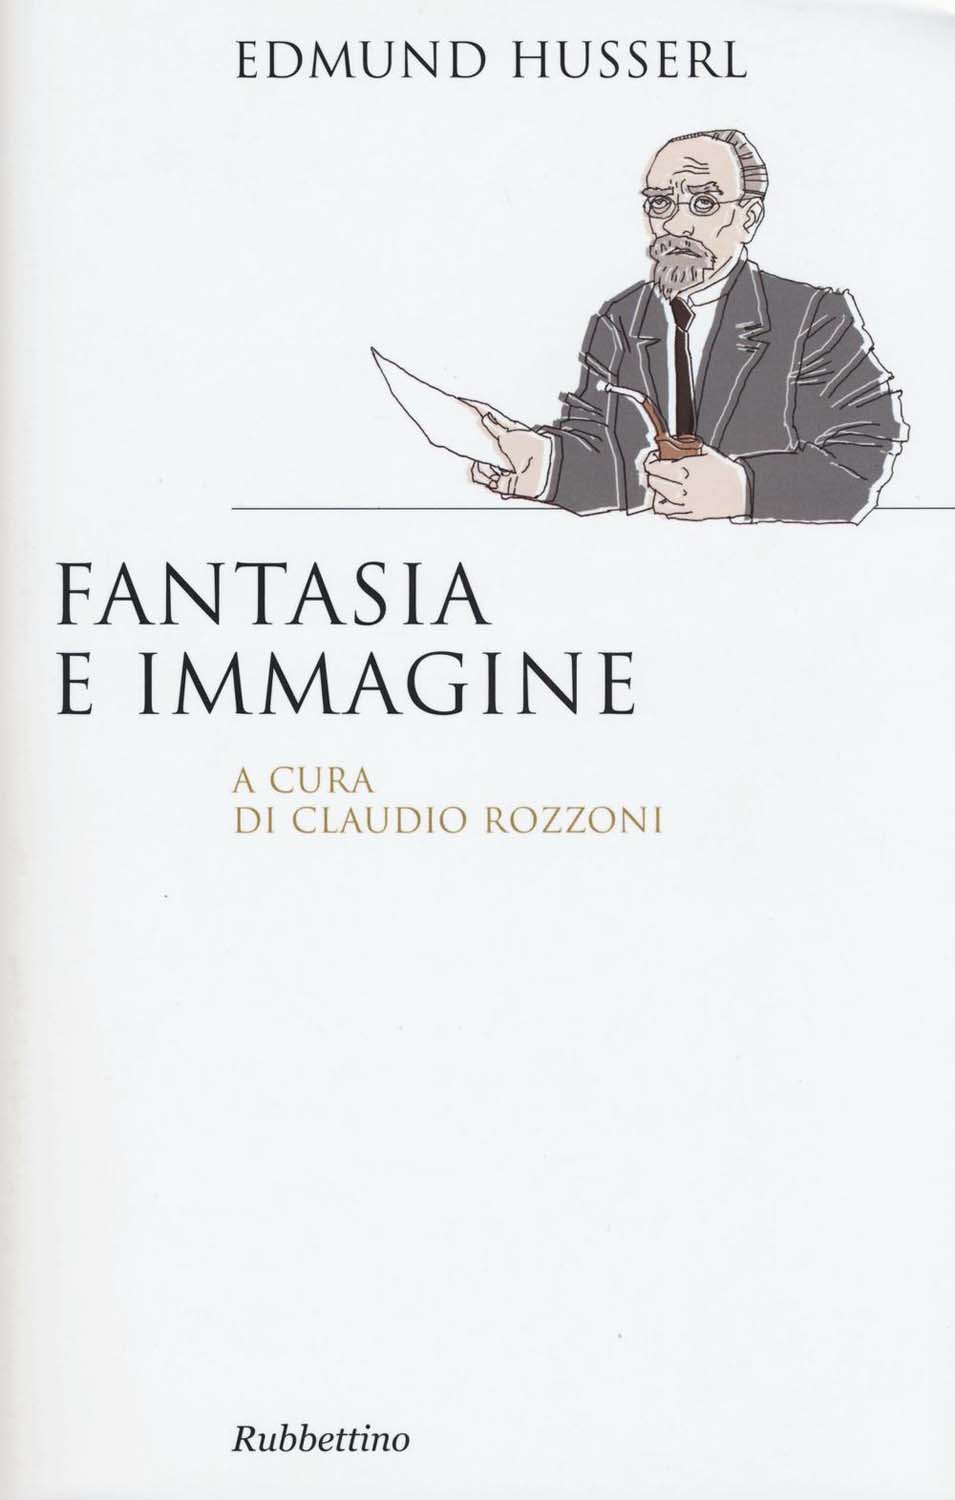 Libri Edmund Husserl - Fantasia E Immagine NUOVO SIGILLATO, EDIZIONE DEL 23/02/2017 SUBITO DISPONIBILE